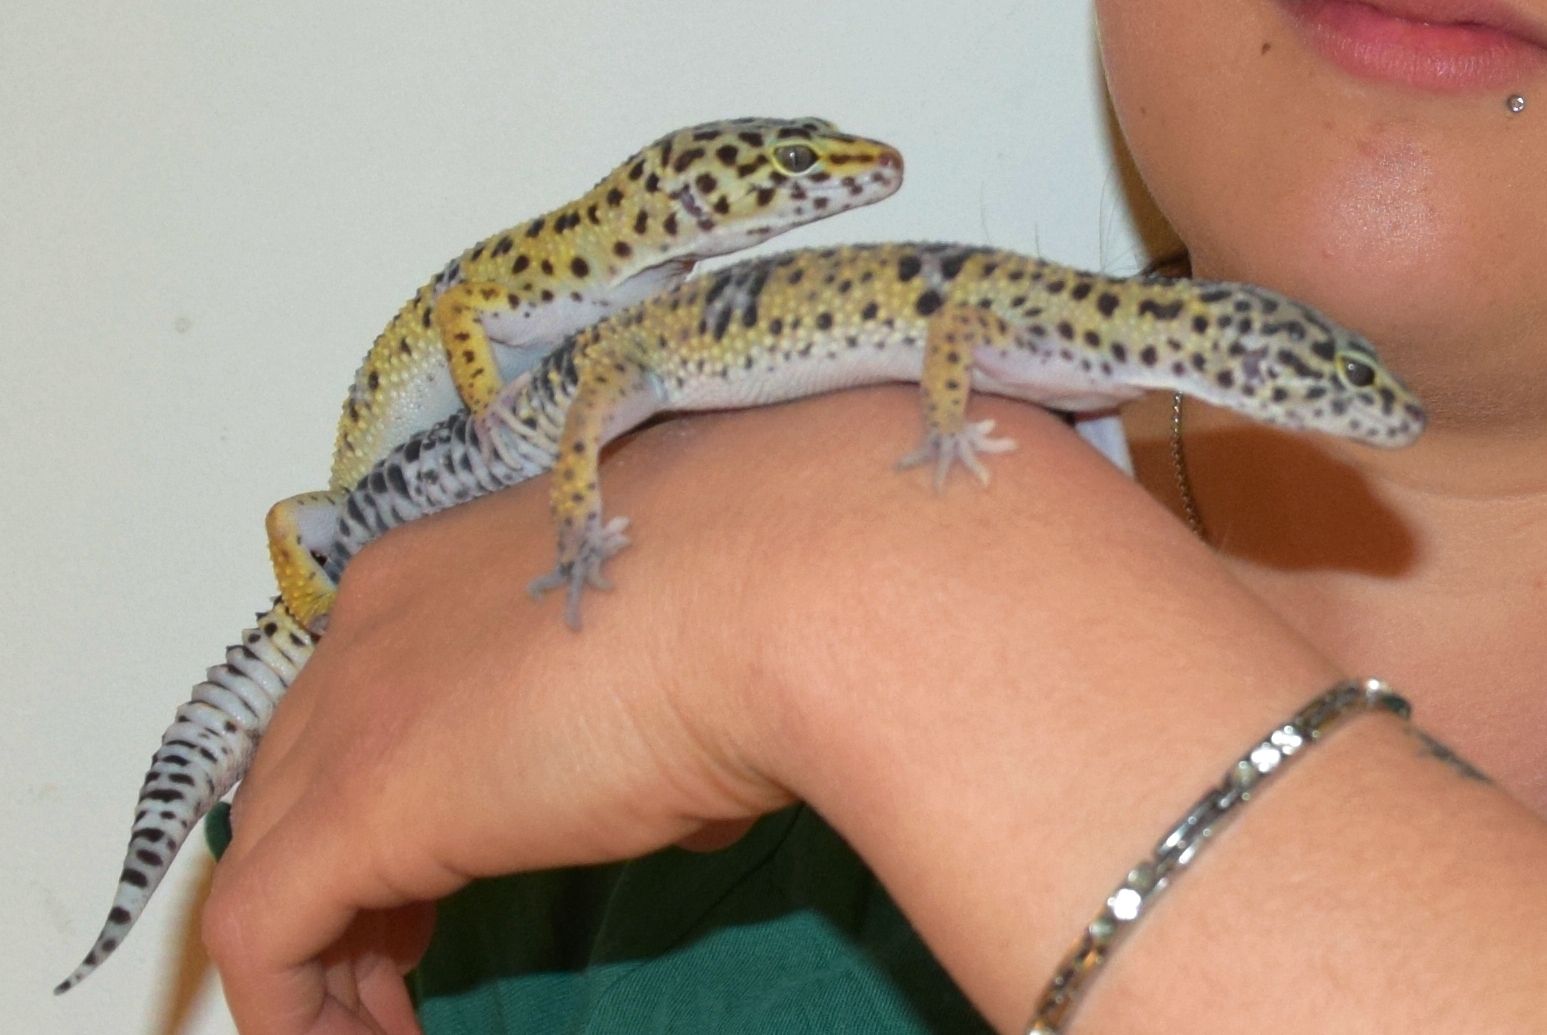 Des geckos ont à nouveau été découvert de le Papiliorama de Chiètres.